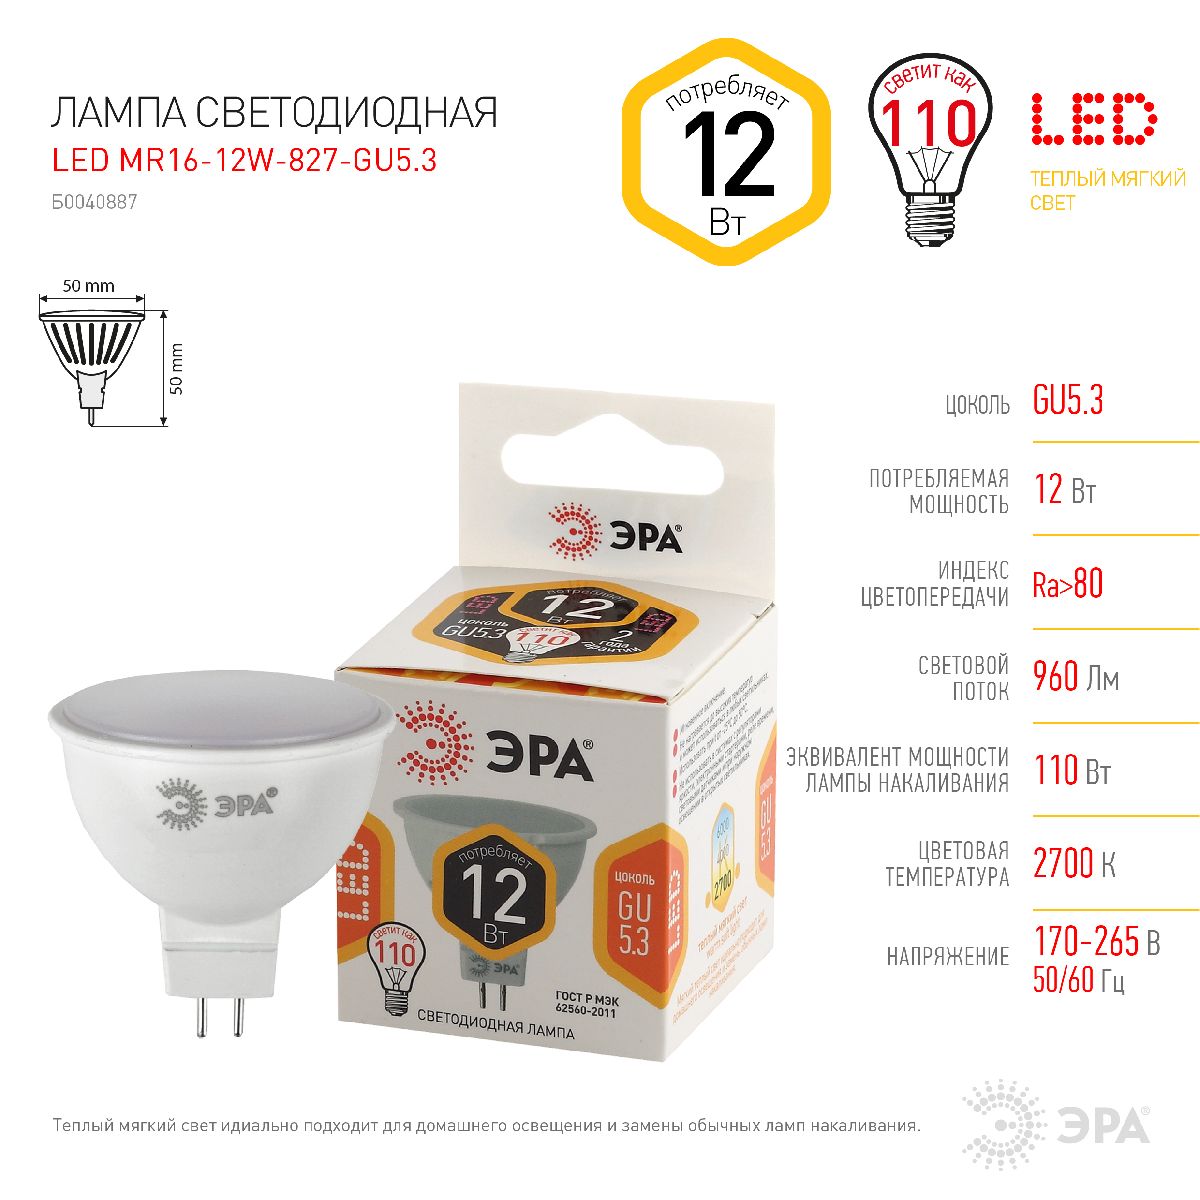 Лампа светодиодная Эра GU5.3 12W 2700K LED MR16-12W-827-GU5.3 Б0040887